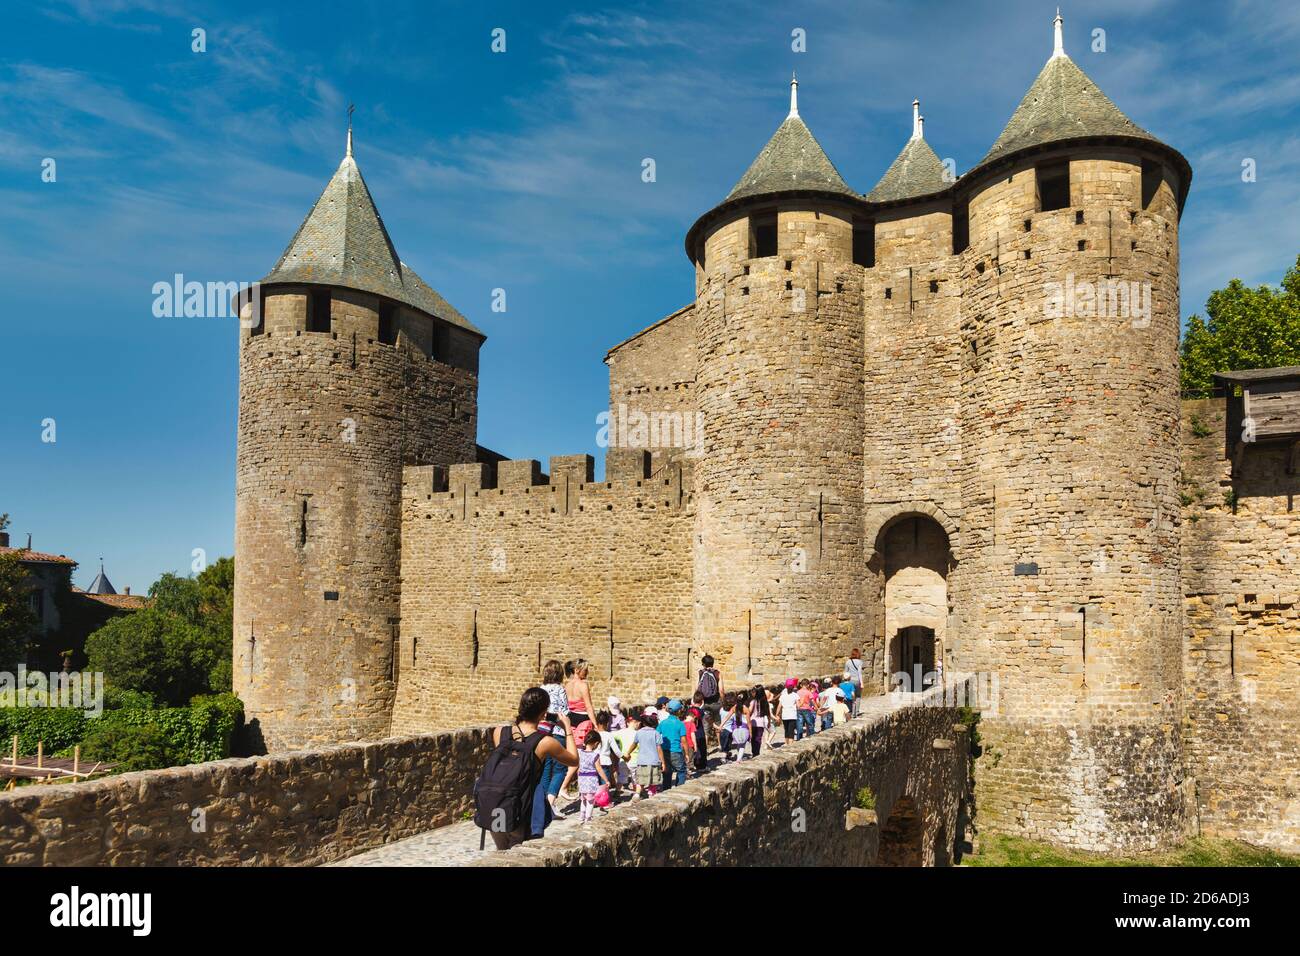 Carcassonne, Languedoc-Roussillon, Frankreich. Le Chateau; eine Festung innerhalb der Mauern der befestigten Stadt. Die Cite de Carcassonne ist ein UNESCO Welt H Stockfoto